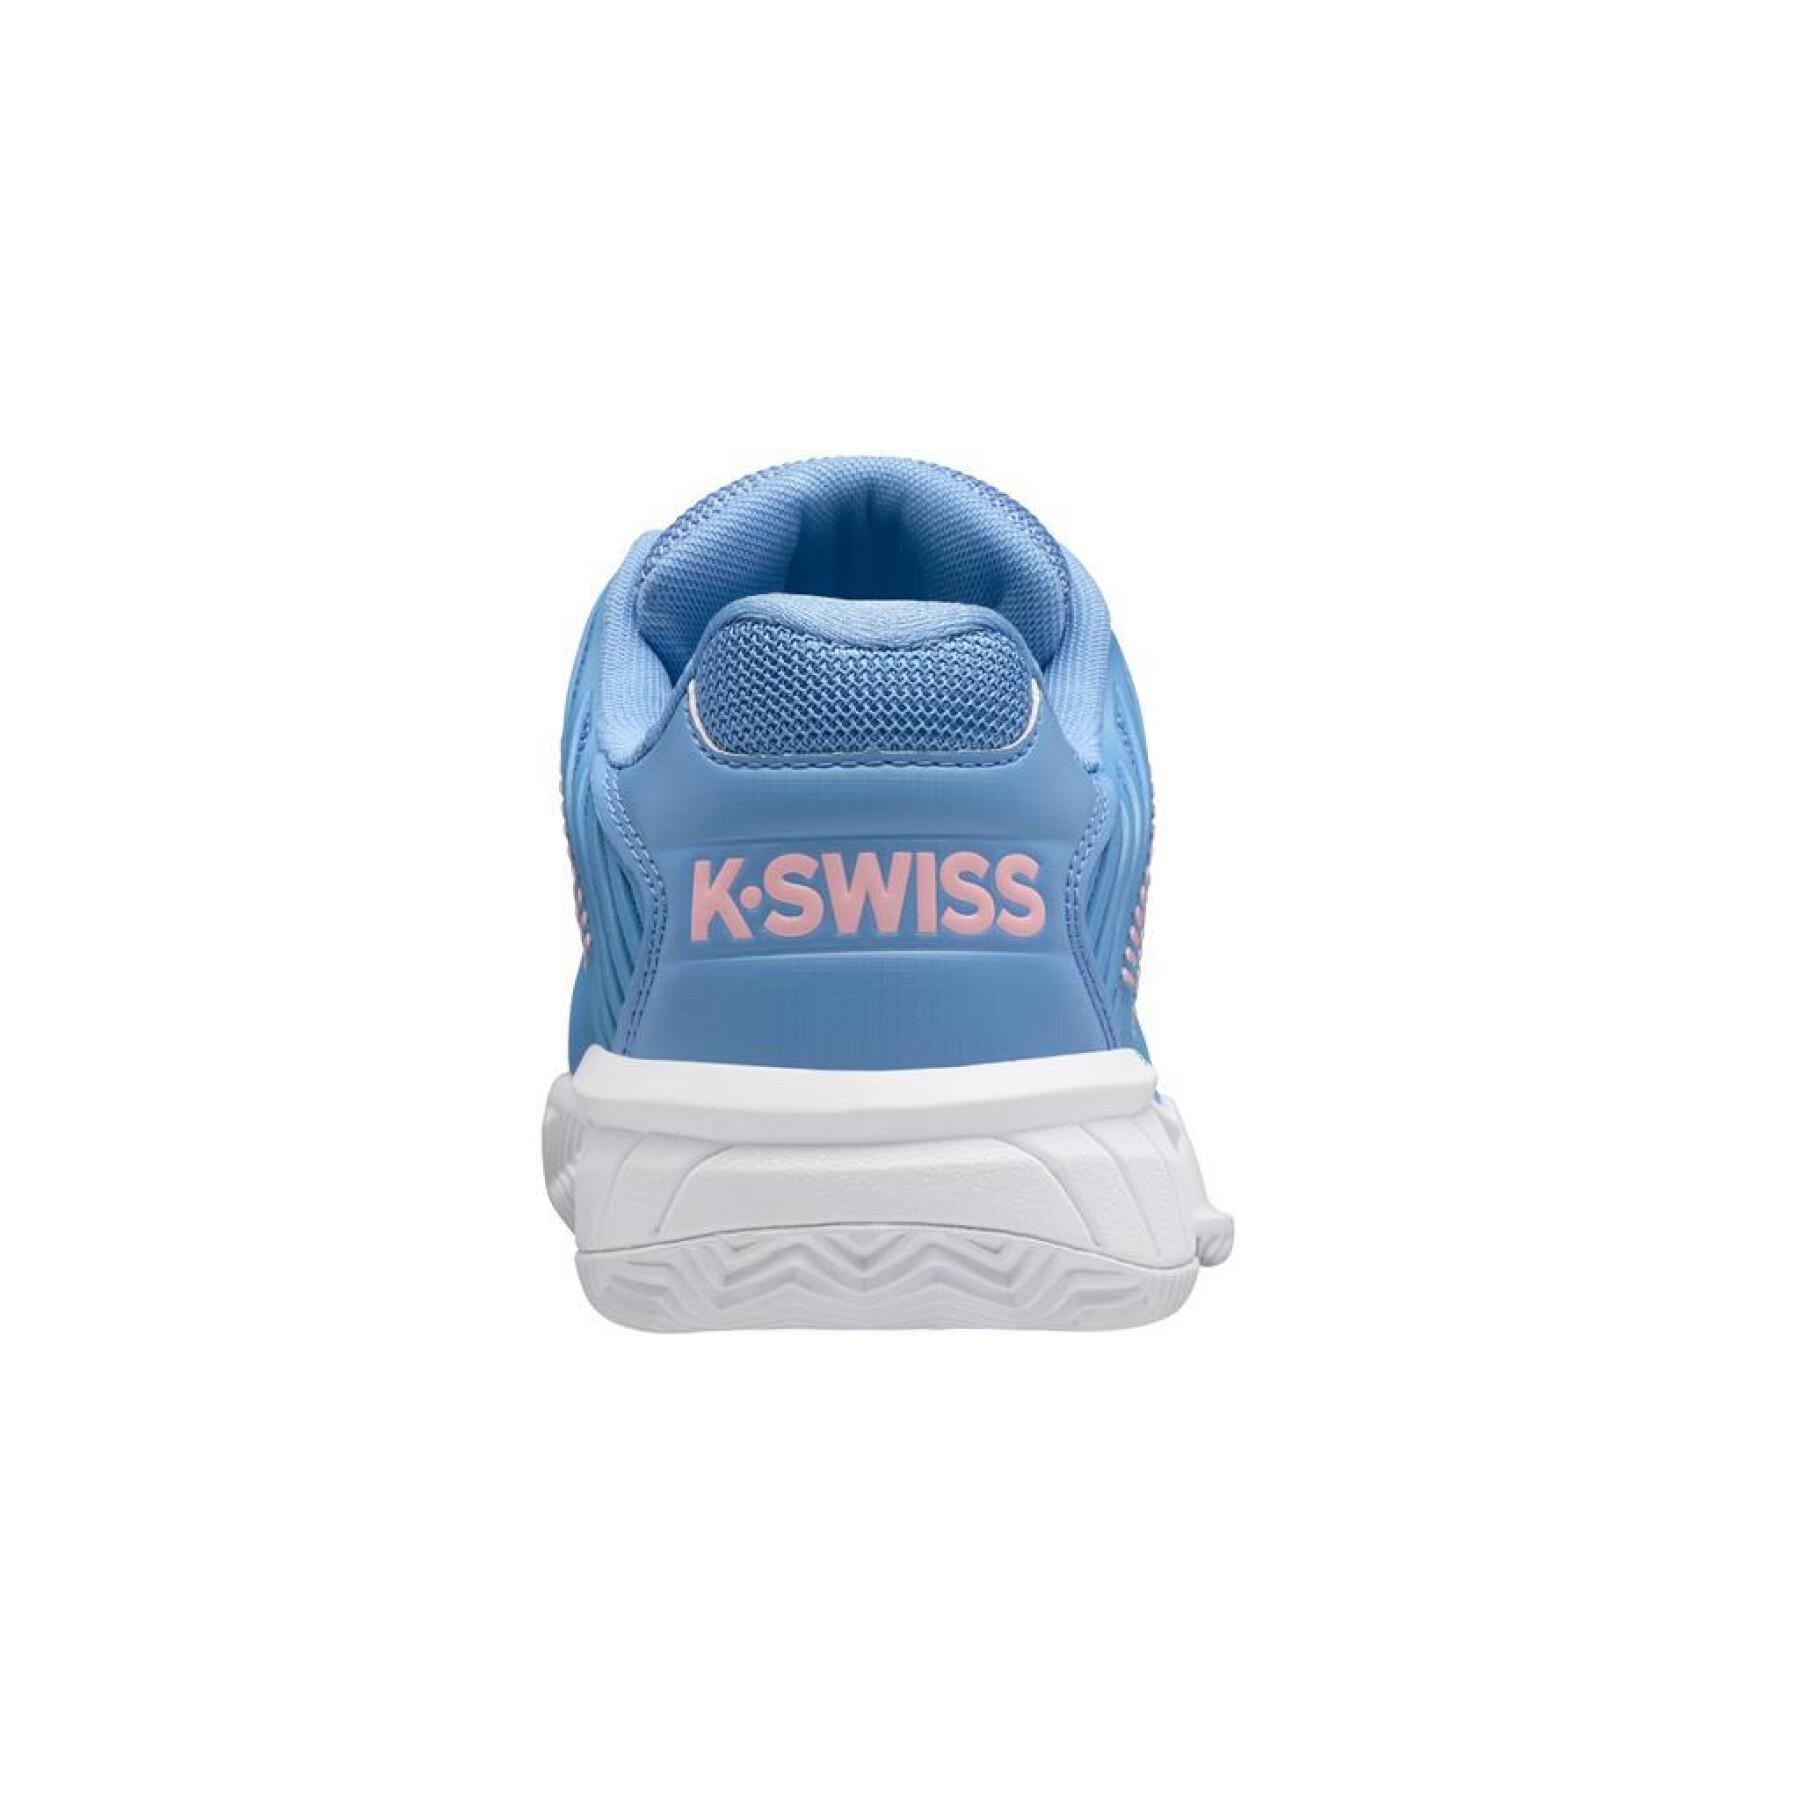 Women's tennis shoes K-Swiss Hypercourt Express 2 Hb